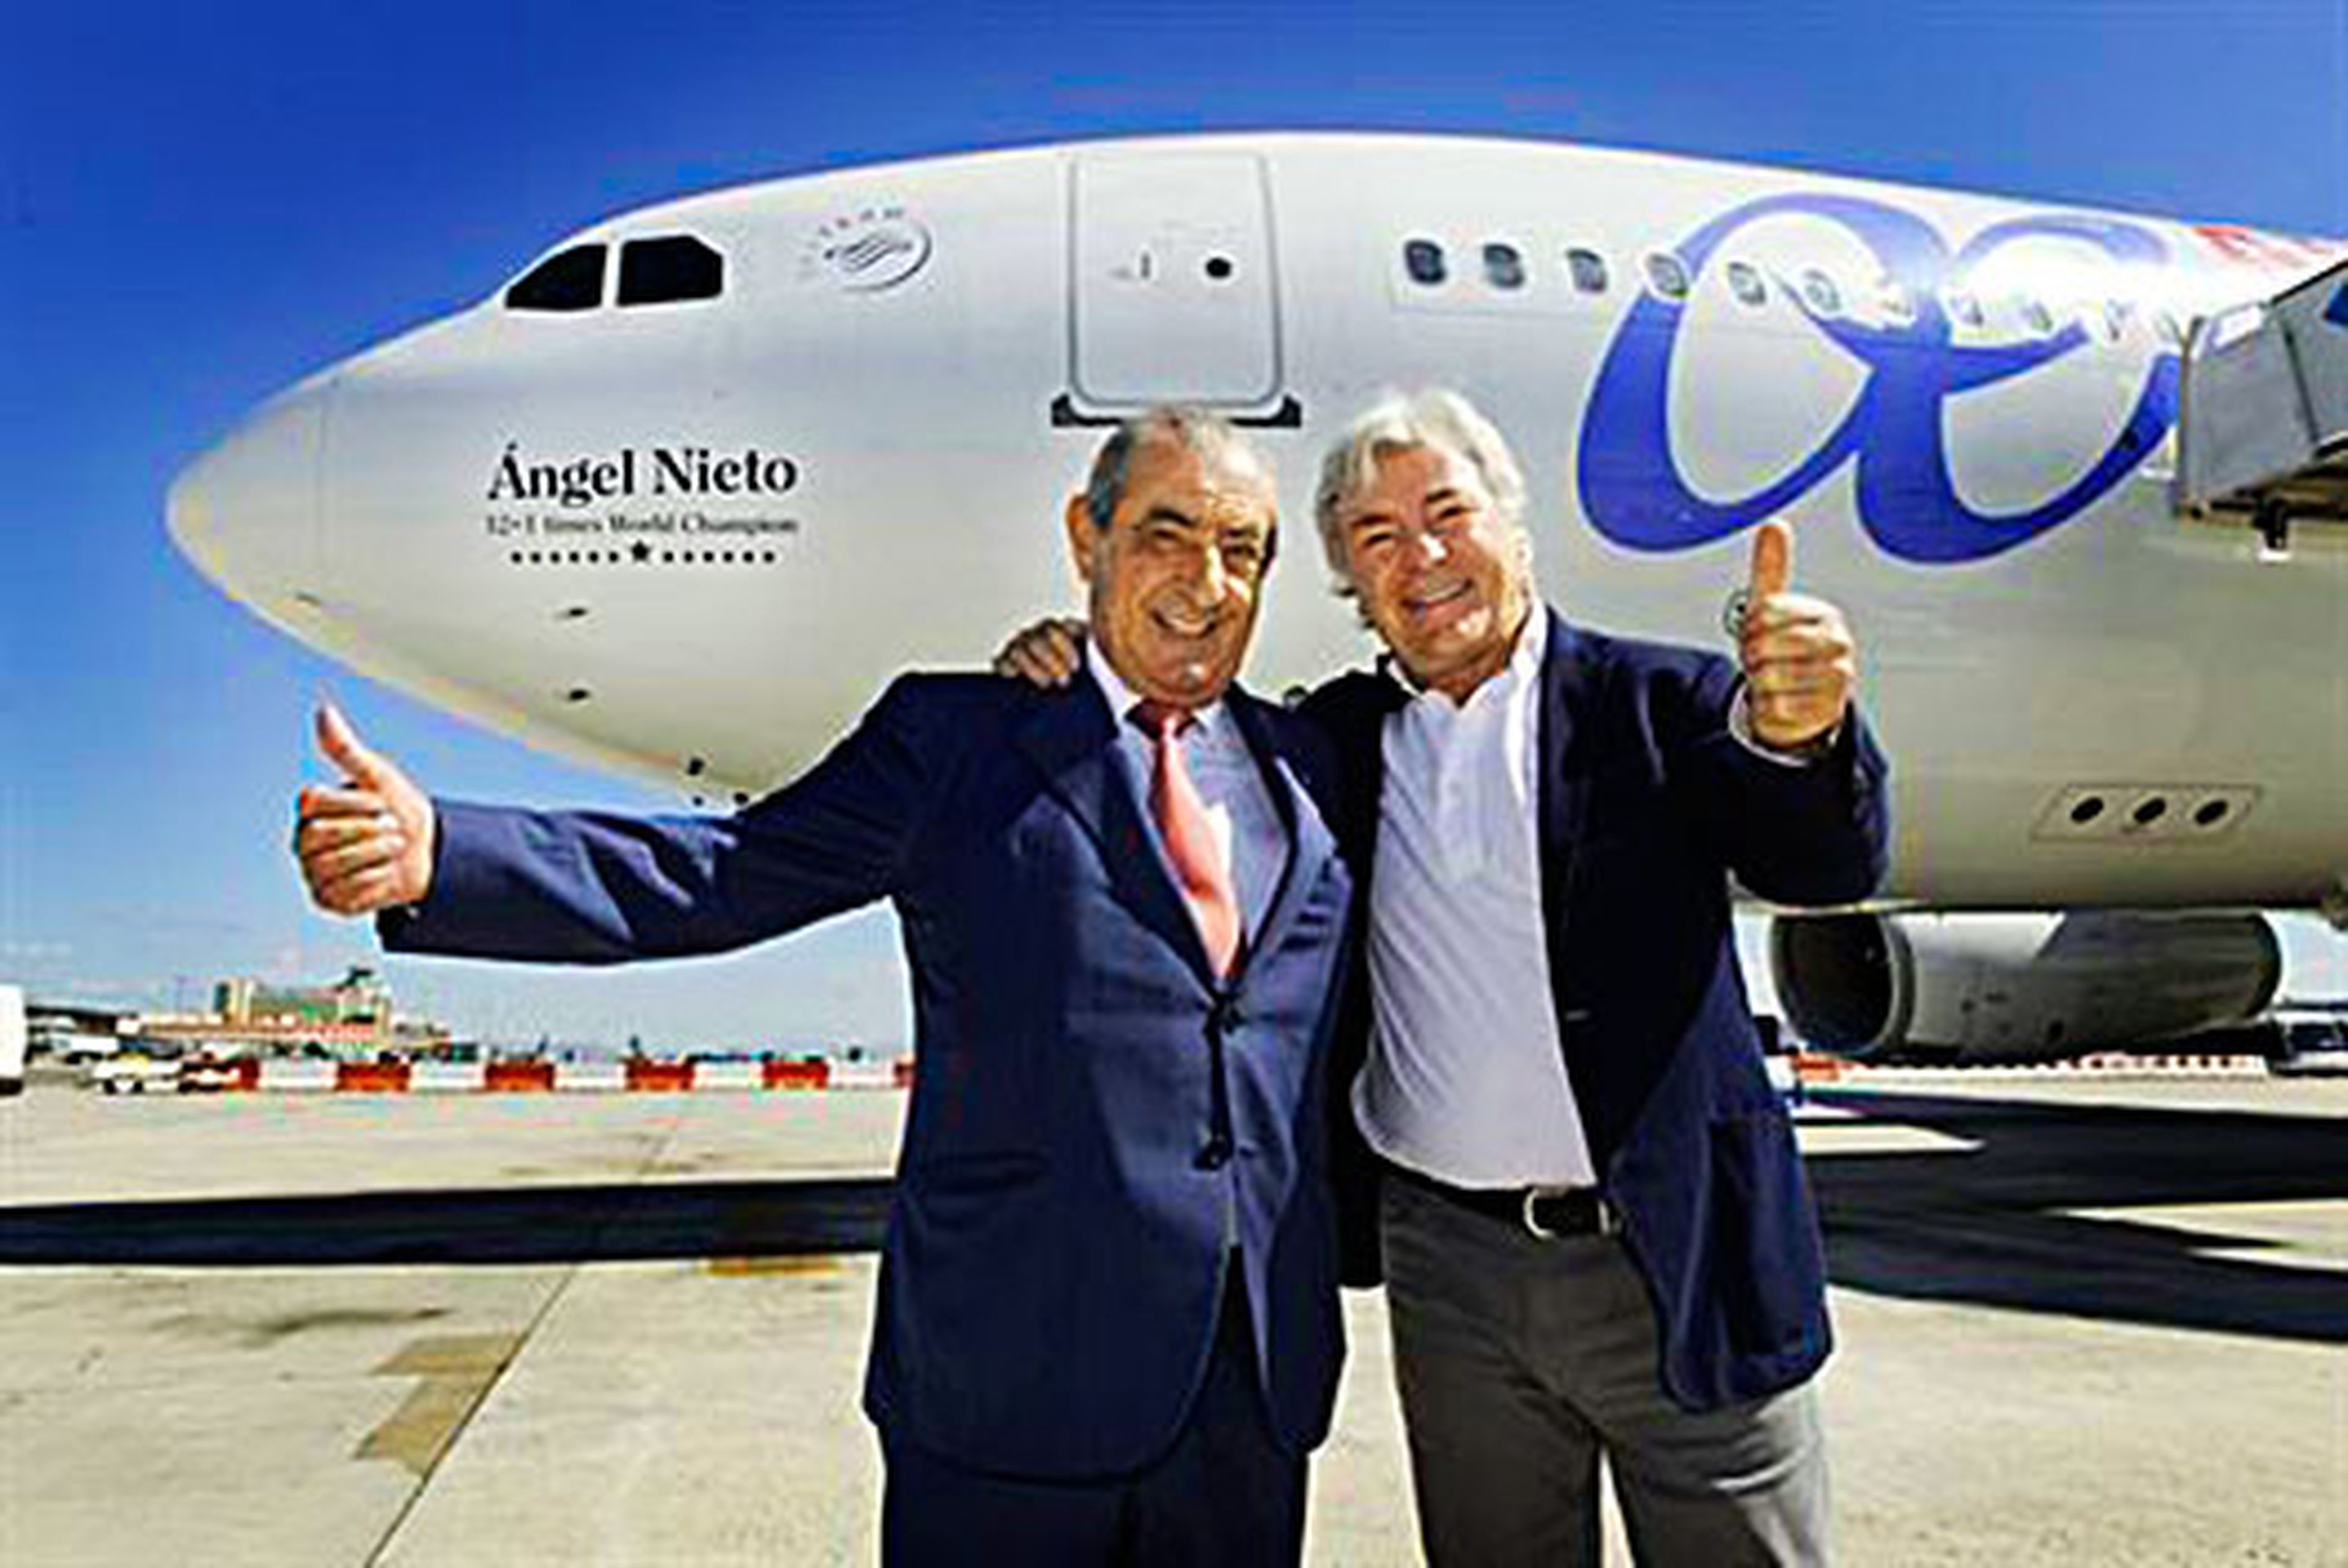 Dedican un Airbus 330 de Air Europa a Angel Nieto